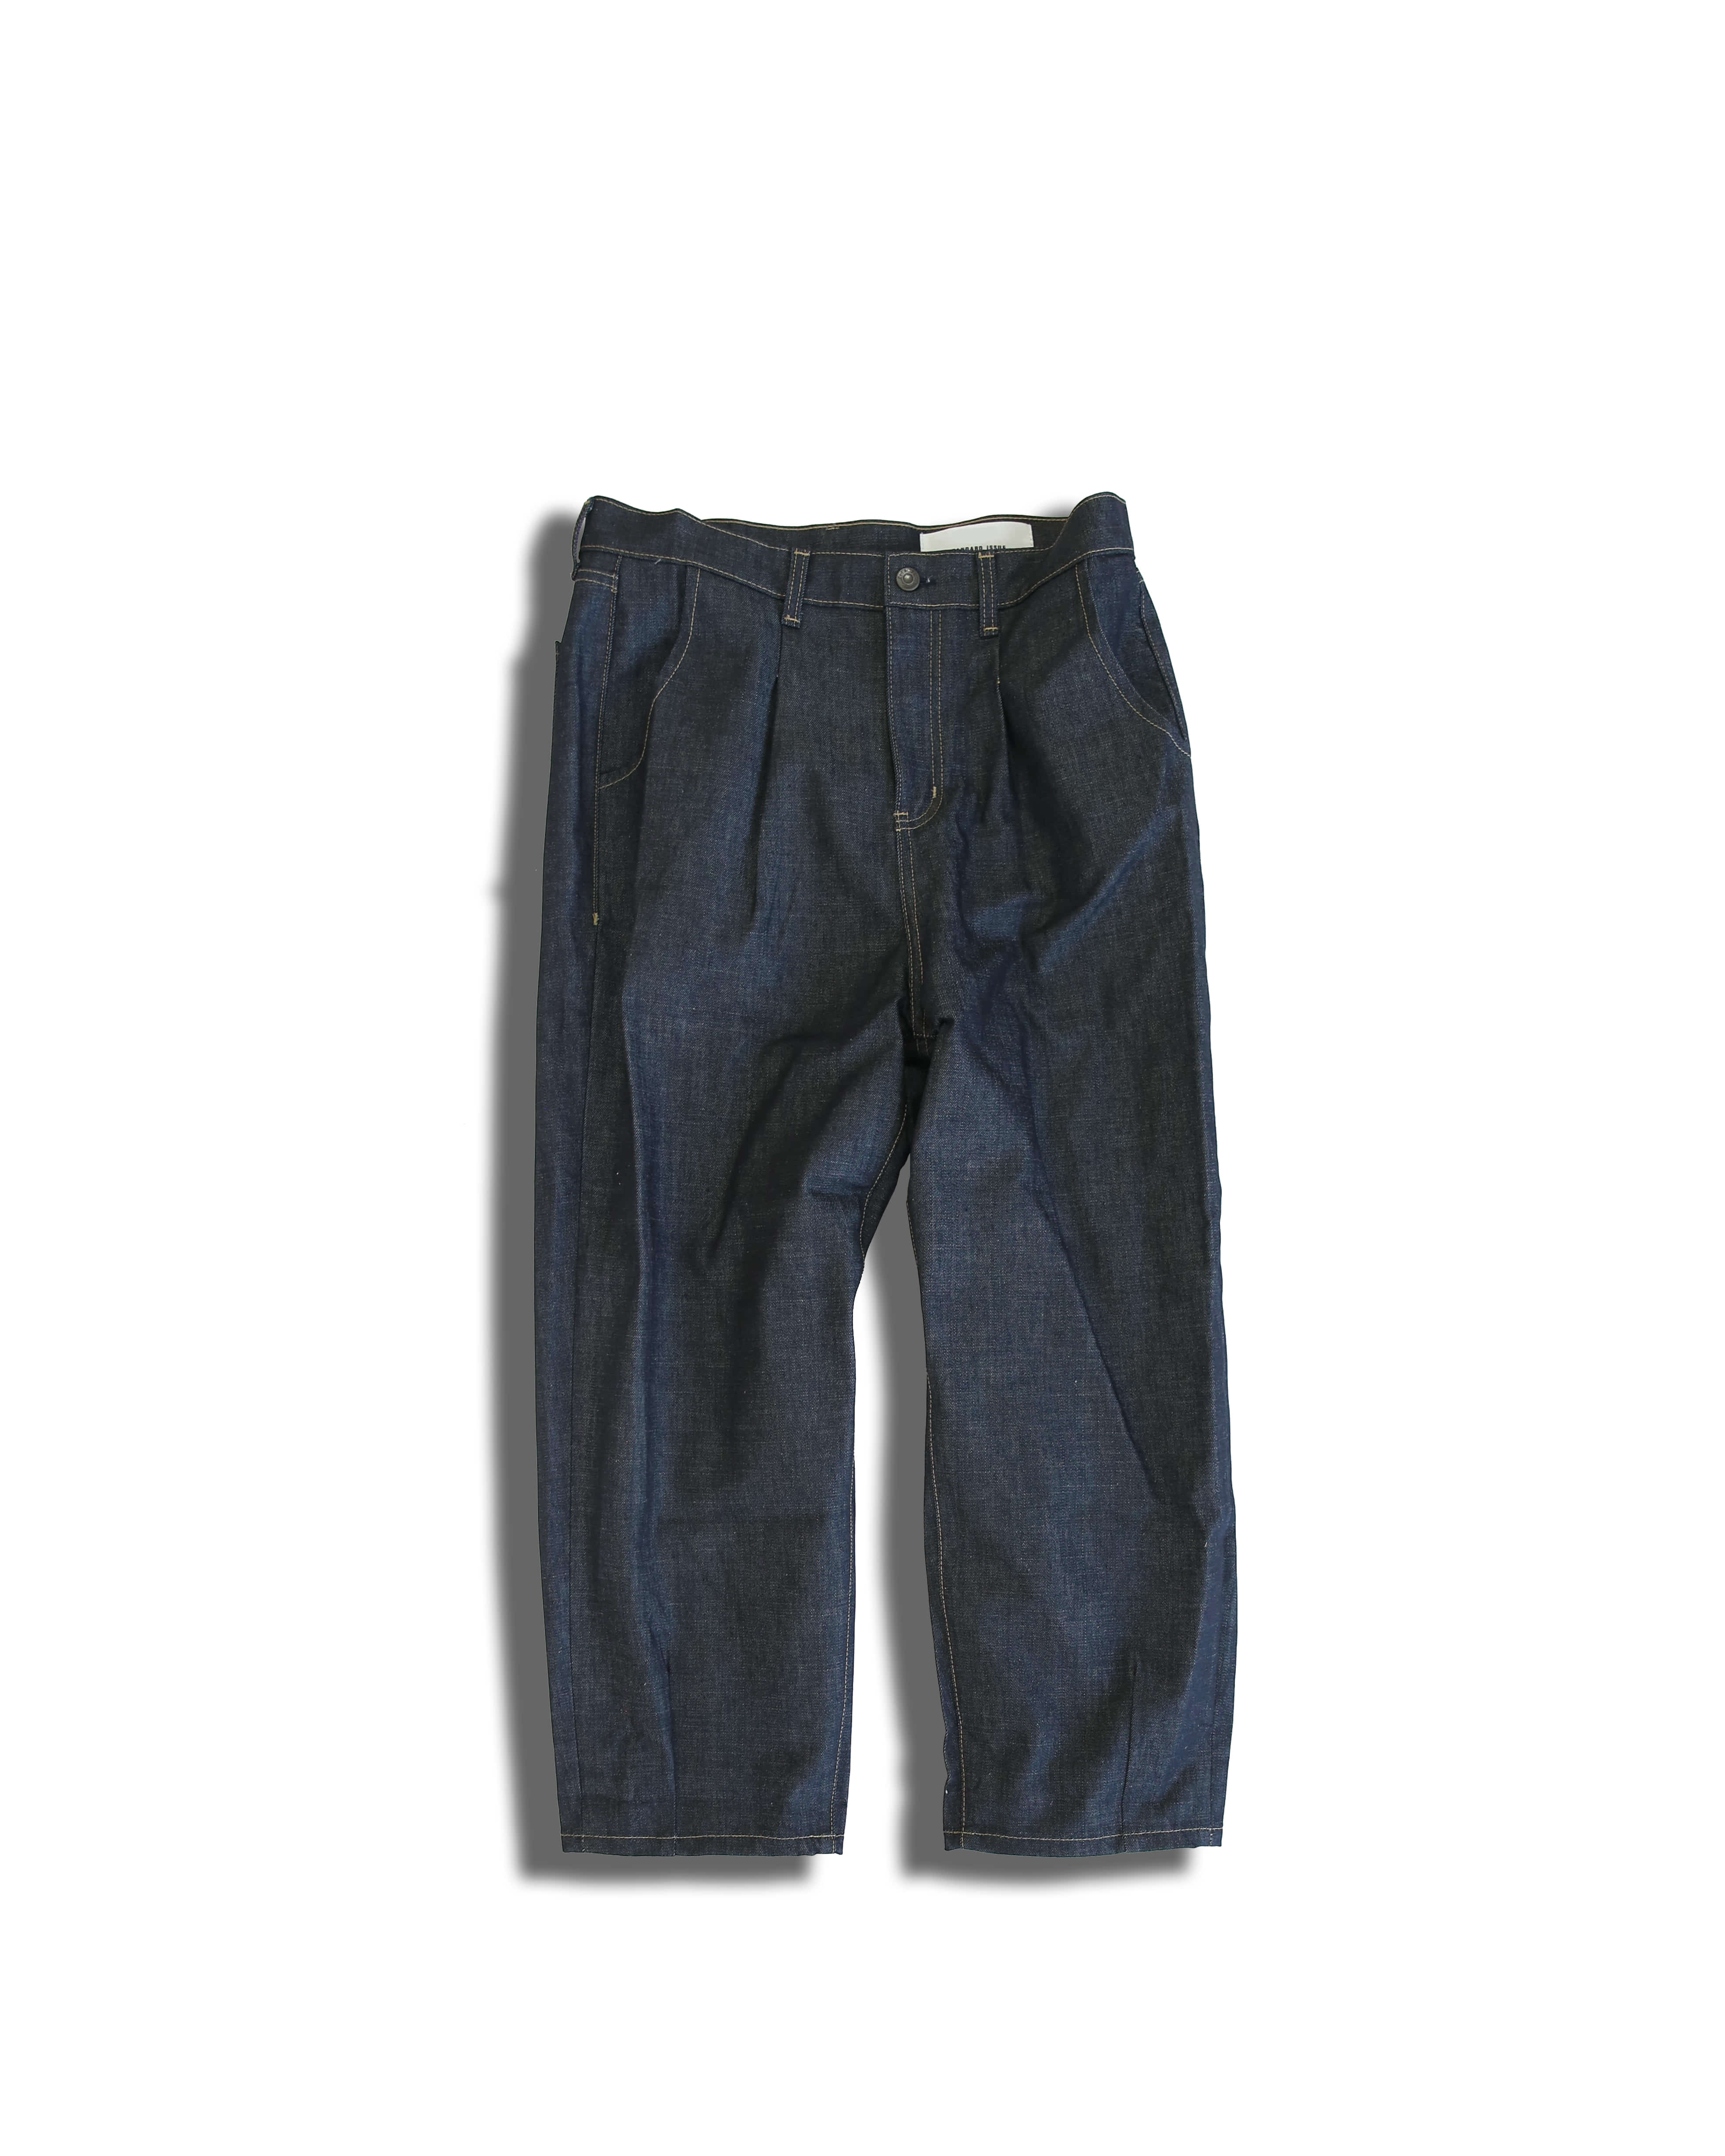 Semi-Wide Raw Denim Pants (Raw Denim)